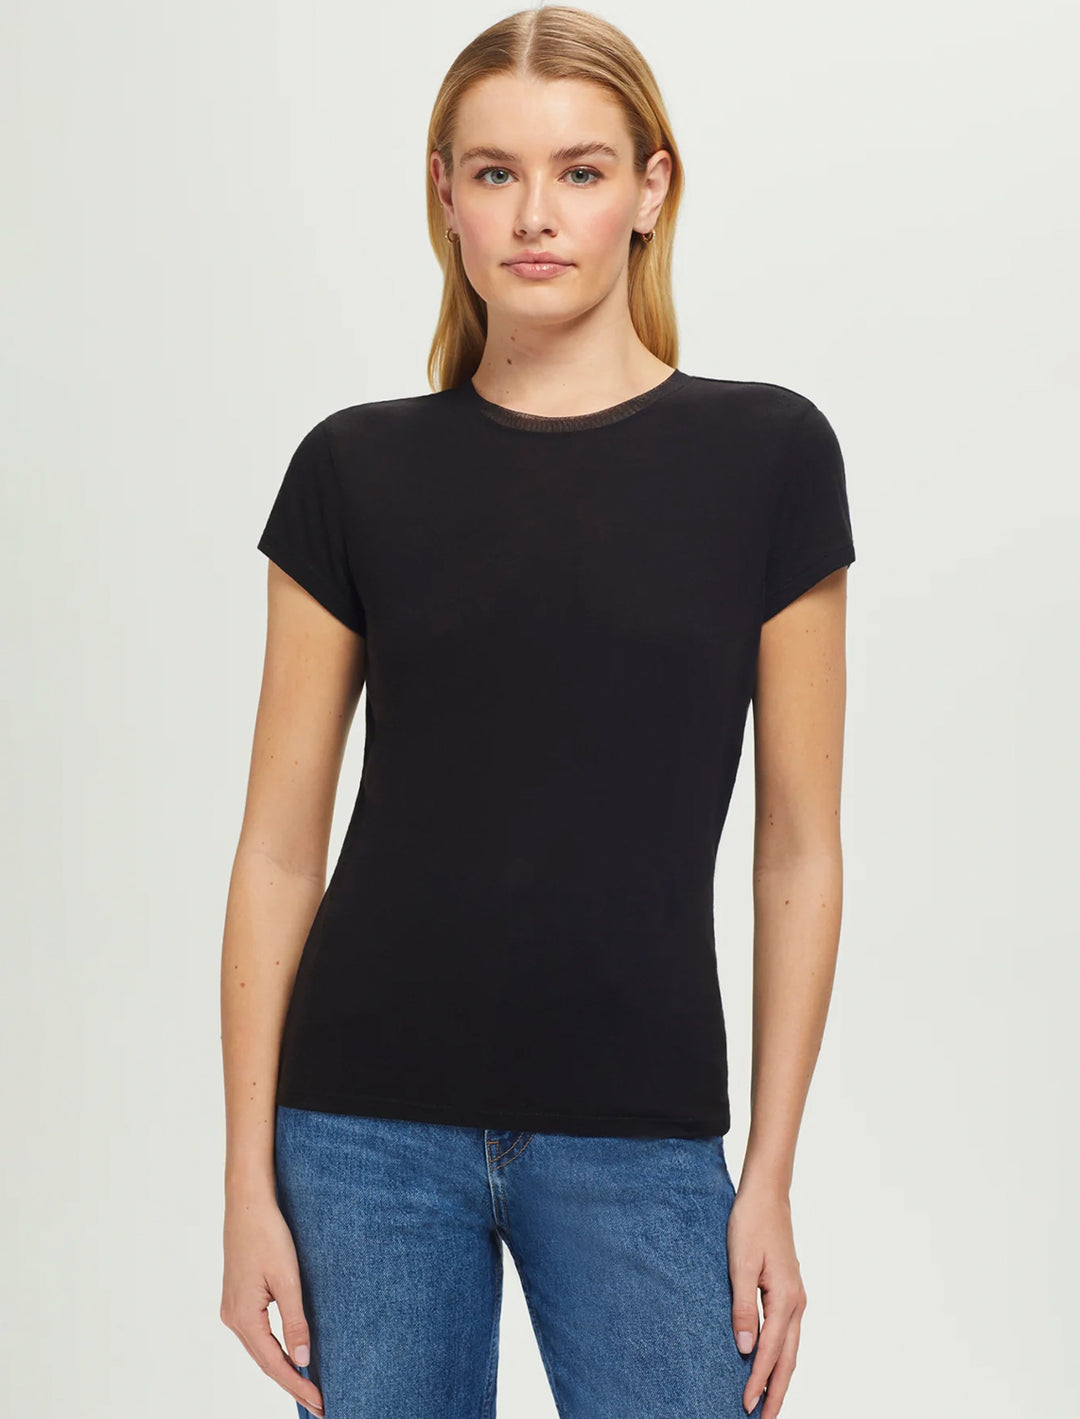 Model wearing Goldie Lewinter's short sleeve mesh trim tee in black.